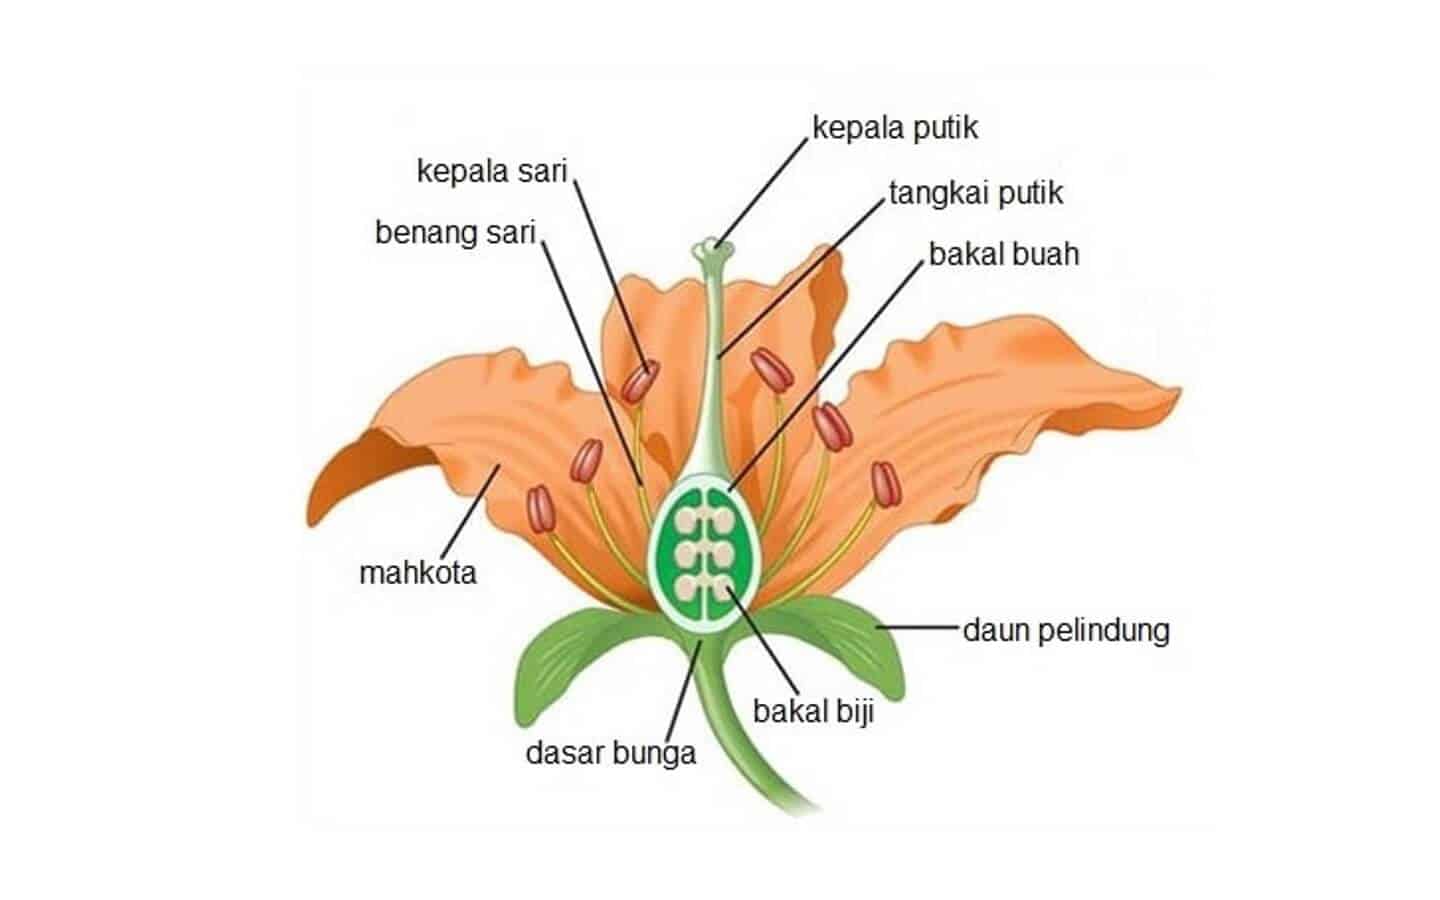 Bunga lengkap terdiri dari putik dan benang sari yang terdapat di satu pohon yang sama disebut